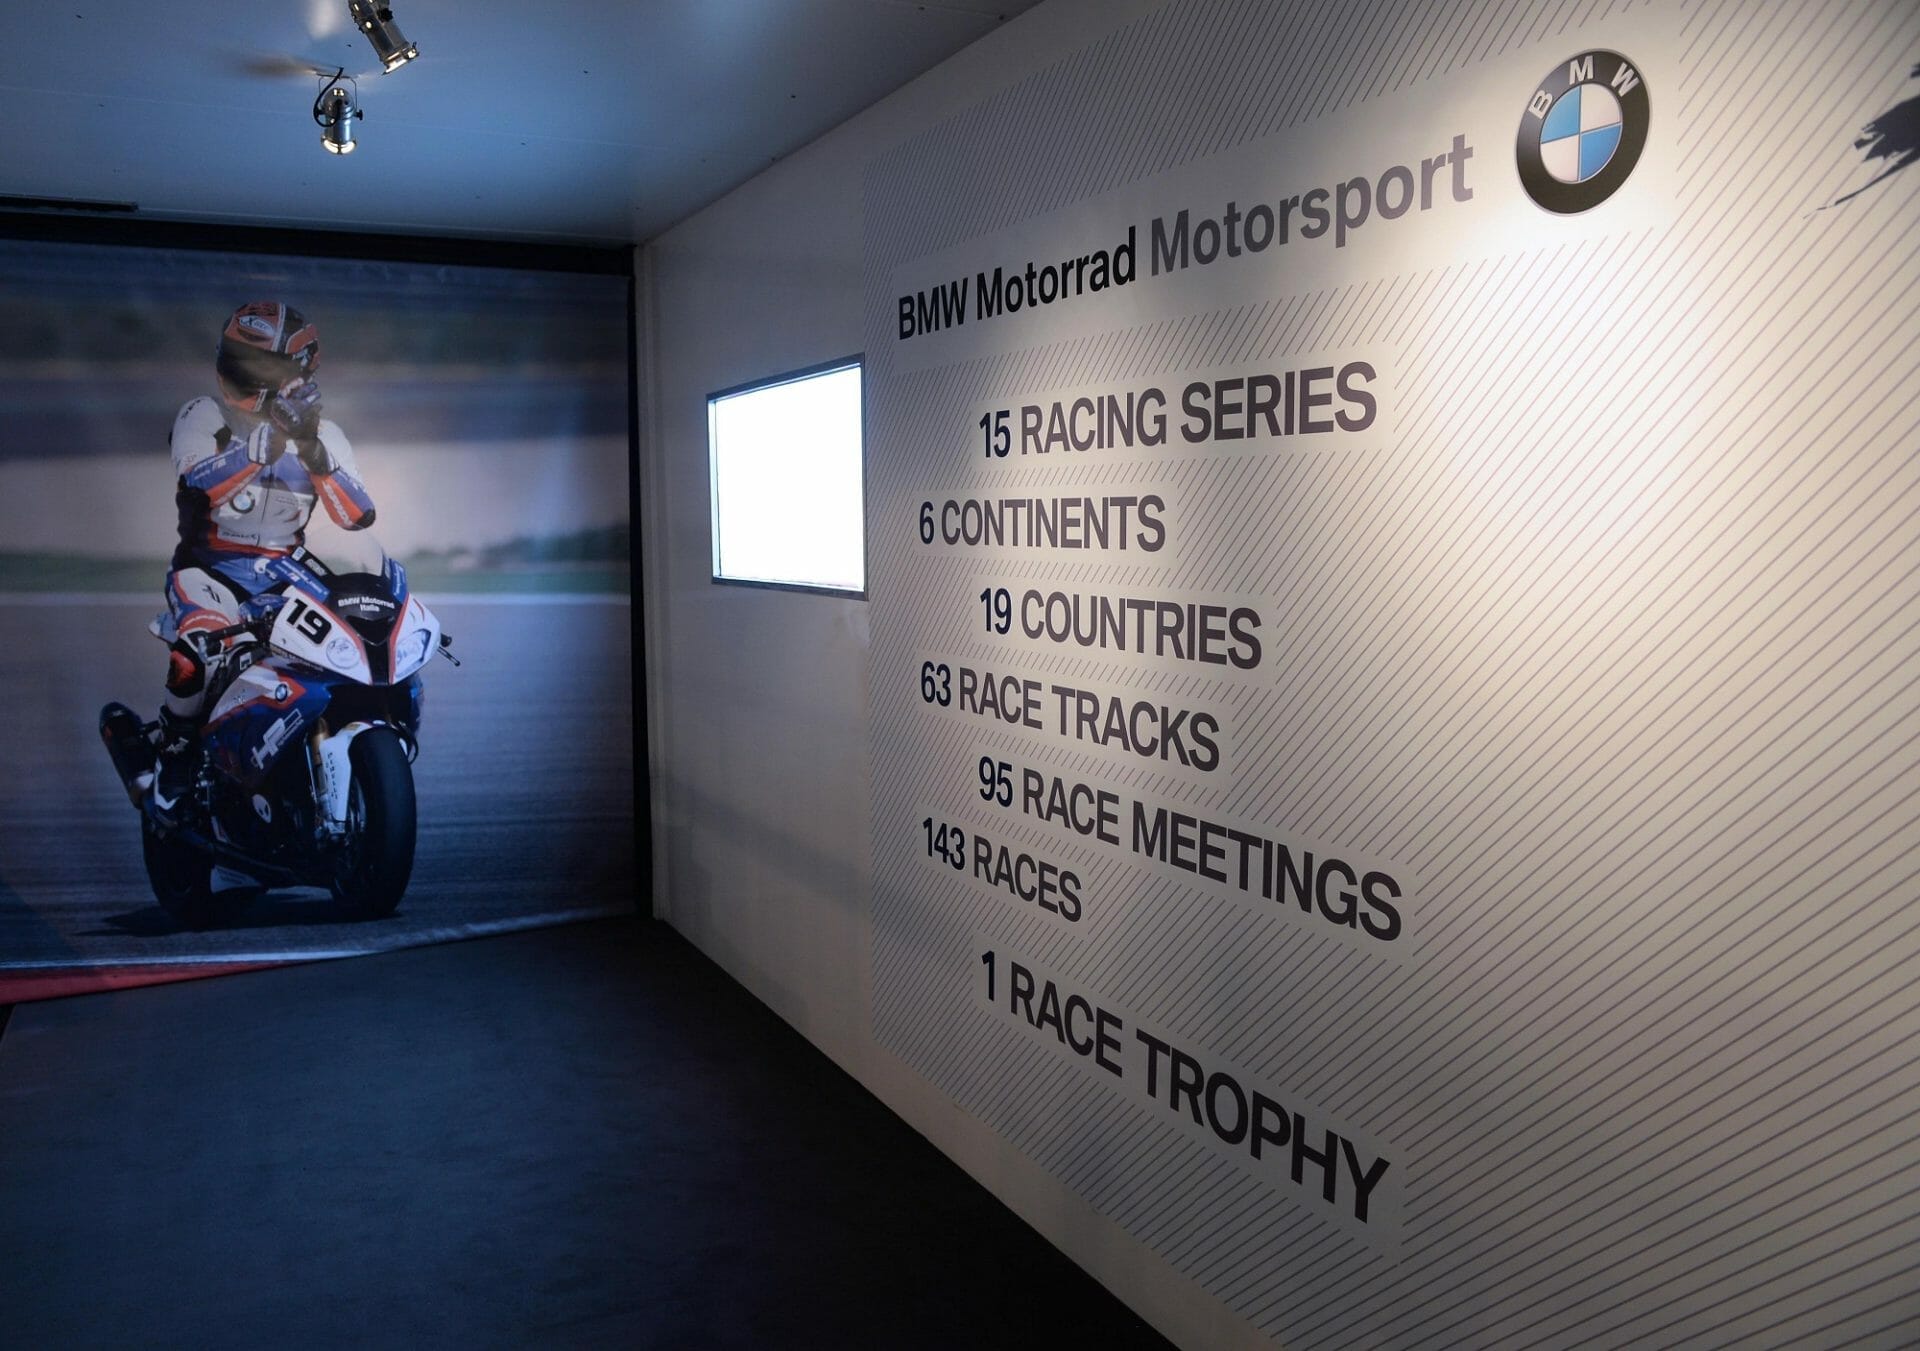 Gesamtwertung für BMW Motorrad Race Trophy 2020 abgesagt
- auch in der MOTORRAD NACHRICHTEN APP